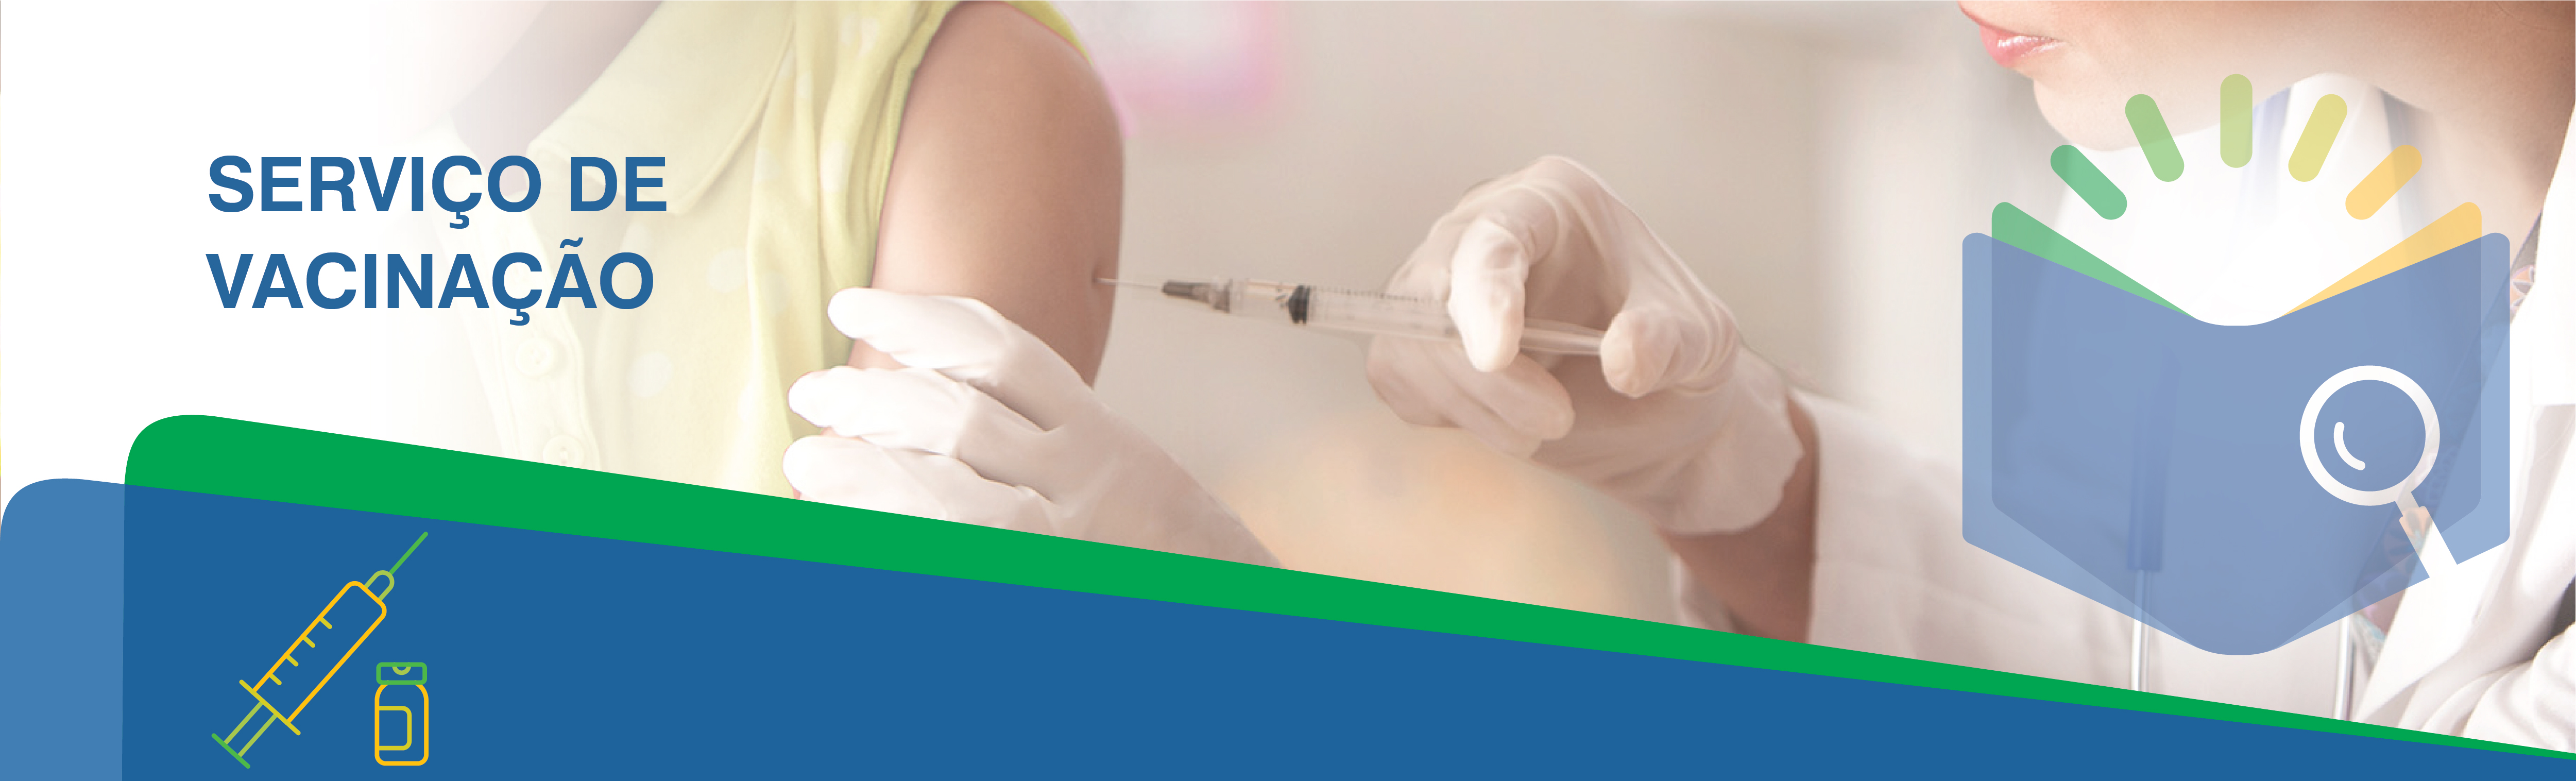 Boas Práticas em Serviços de Vacinação no Brasil